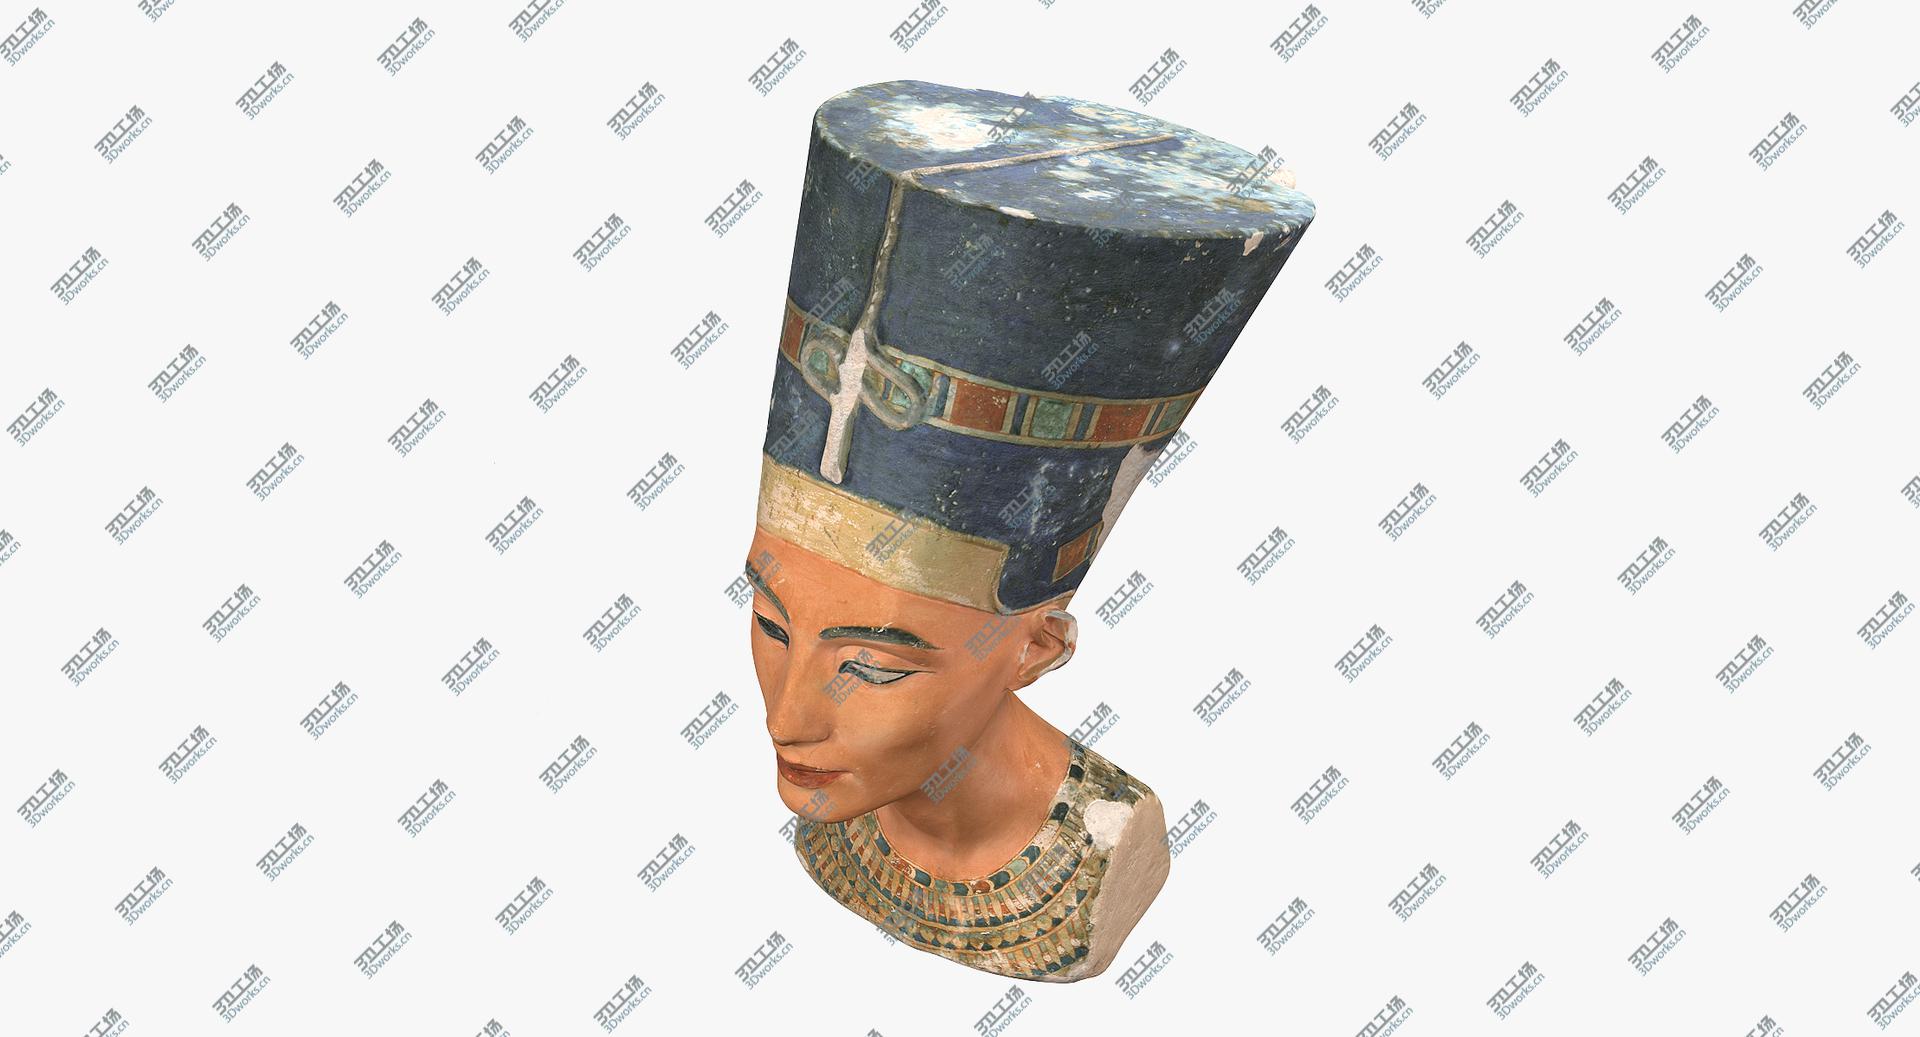 images/goods_img/2021040162/Nefertiti Bust 3D model/5.jpg